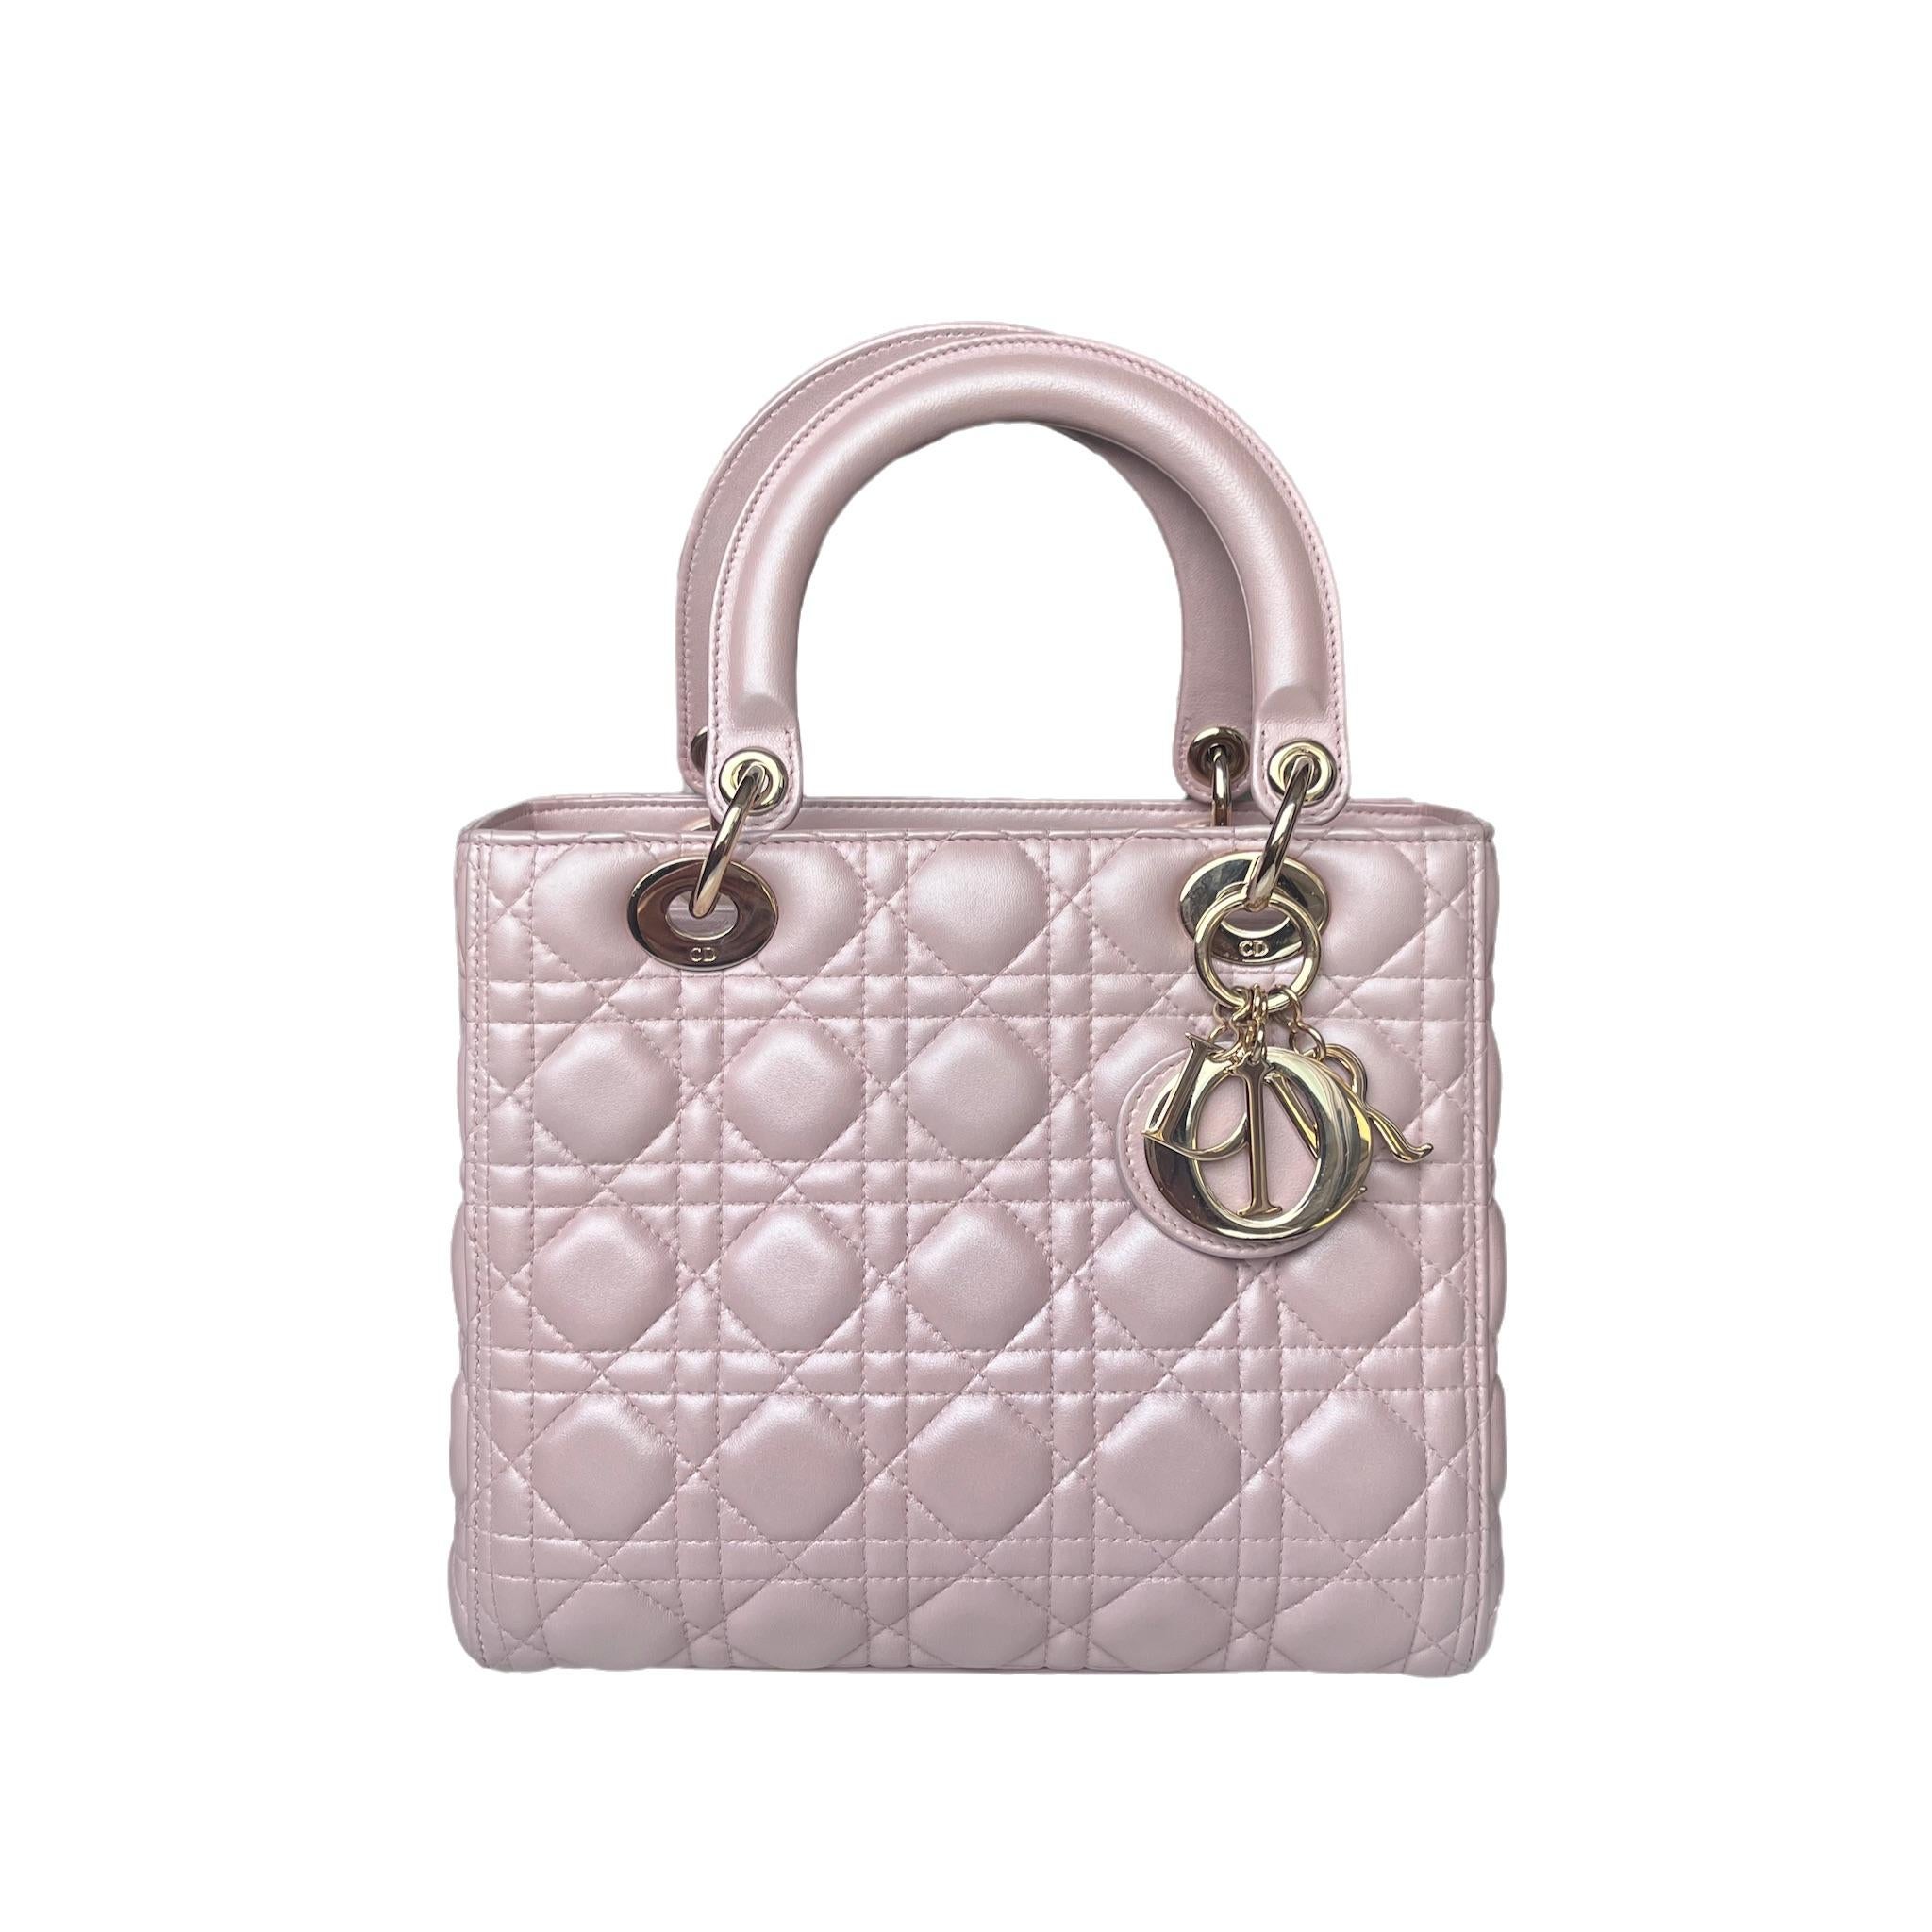 La borsa Lady Dior è un esempio di eleganza e bellezza. Accentua il tuo look con lo stile senza tempo della Medium Lady Dior, realizzata in pelle di agnello rosa perlato. Questa borsa classica presenta un punto cannage che crea una splendida